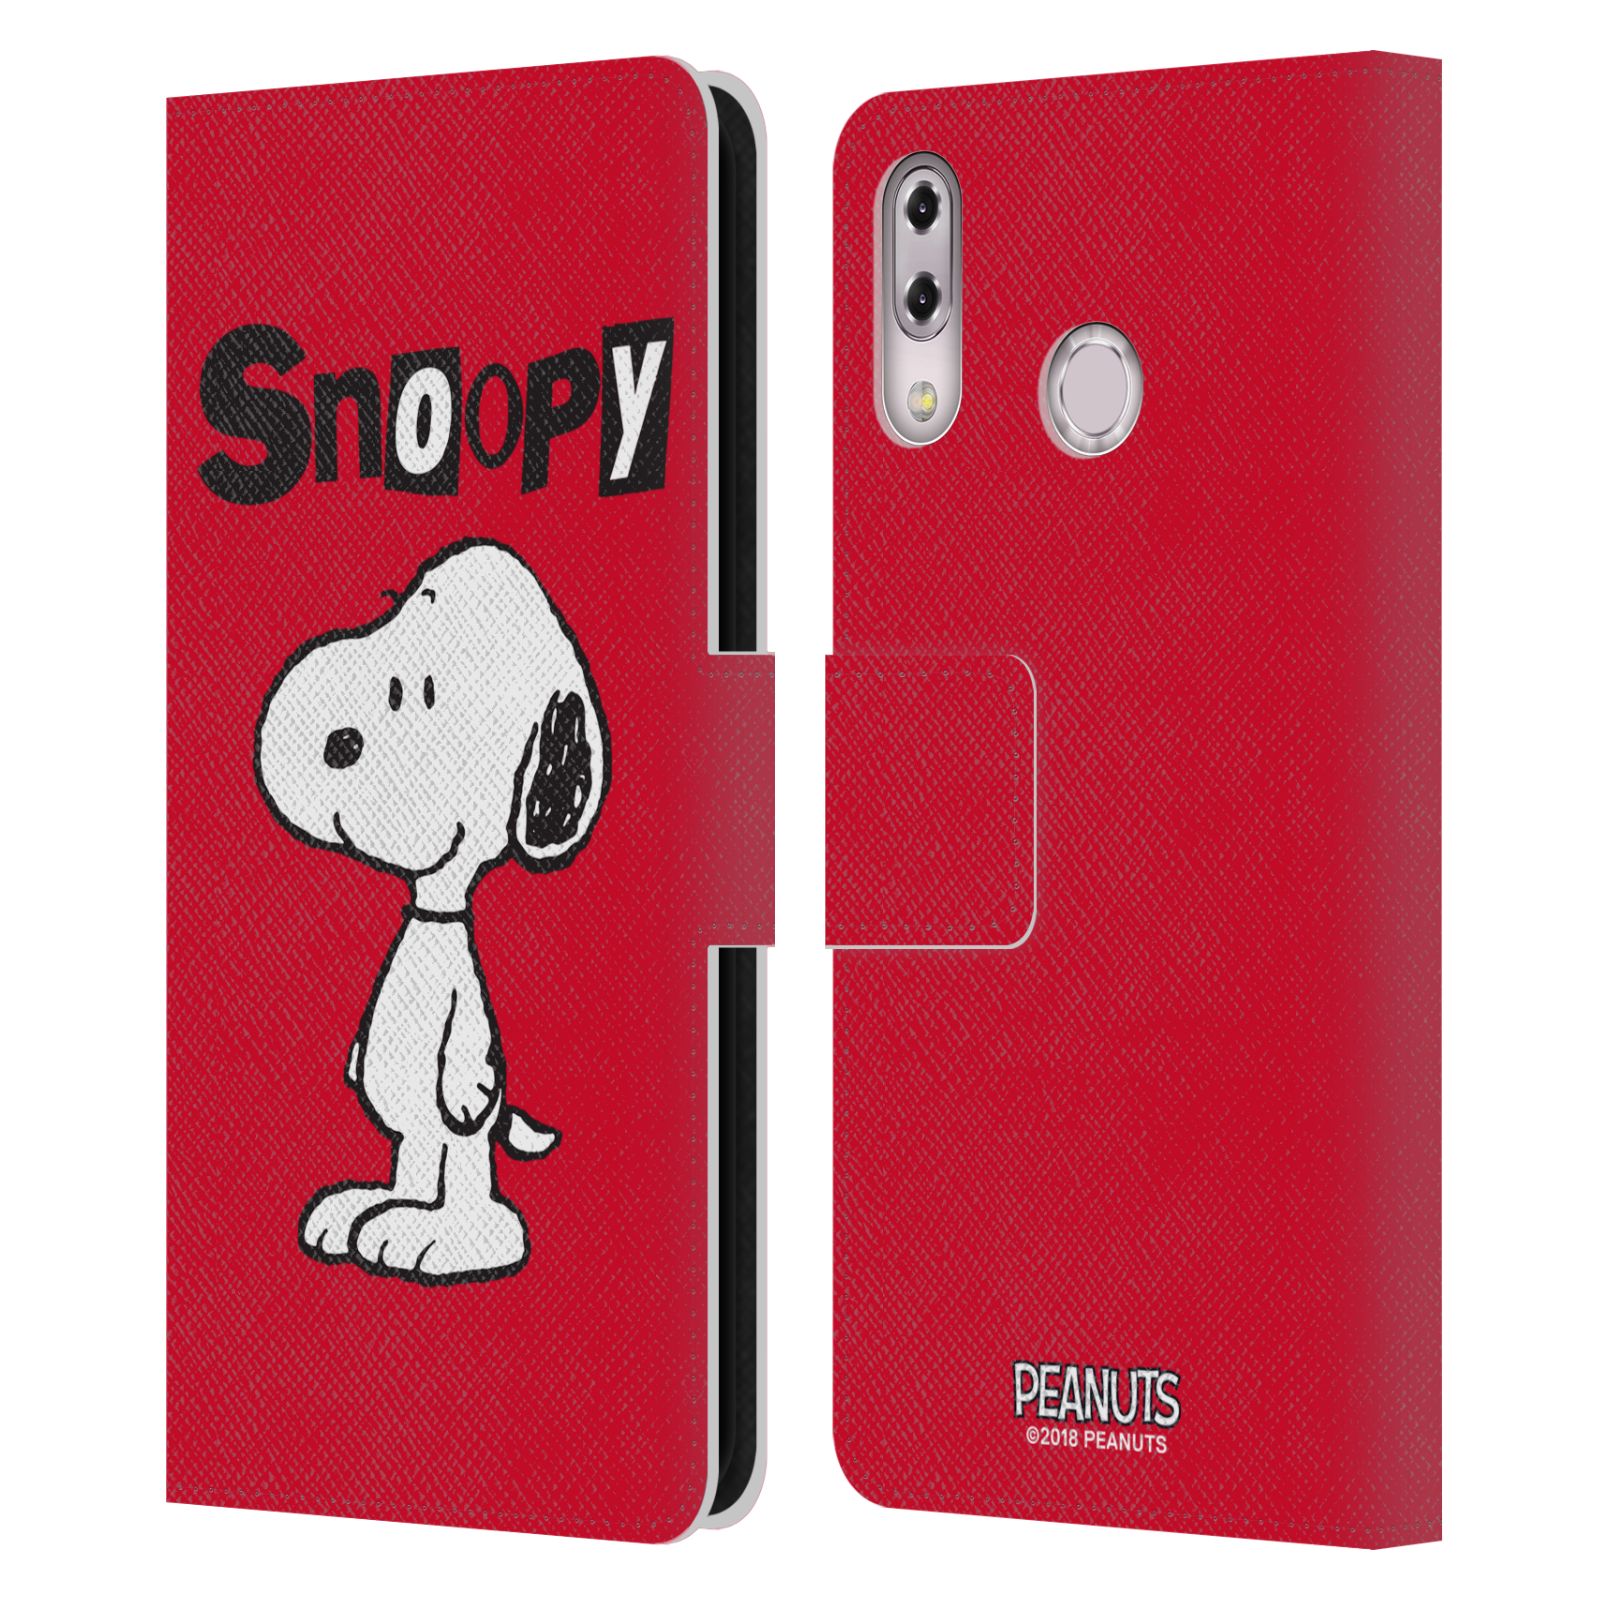 Pouzdro na mobil Asus Zenfone 5z ZS620KL, 5 ZE620KL  - HEAD CASE - Peanuts - Snoopy červená